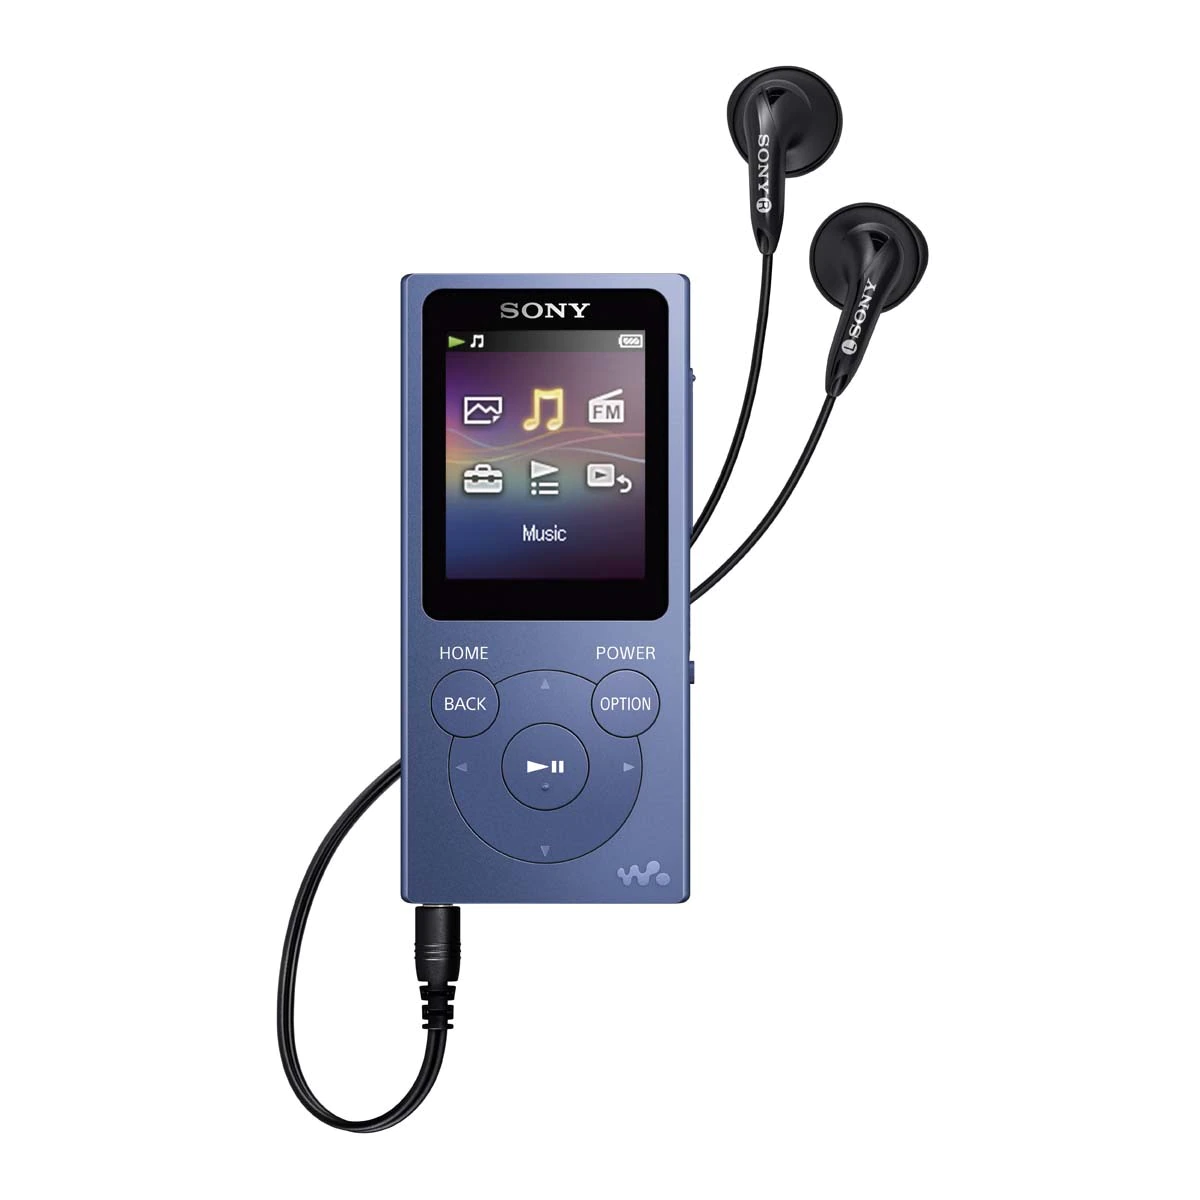 Reproductor MP4 Sony NW-E394 Azul de 8 GB con radio FM